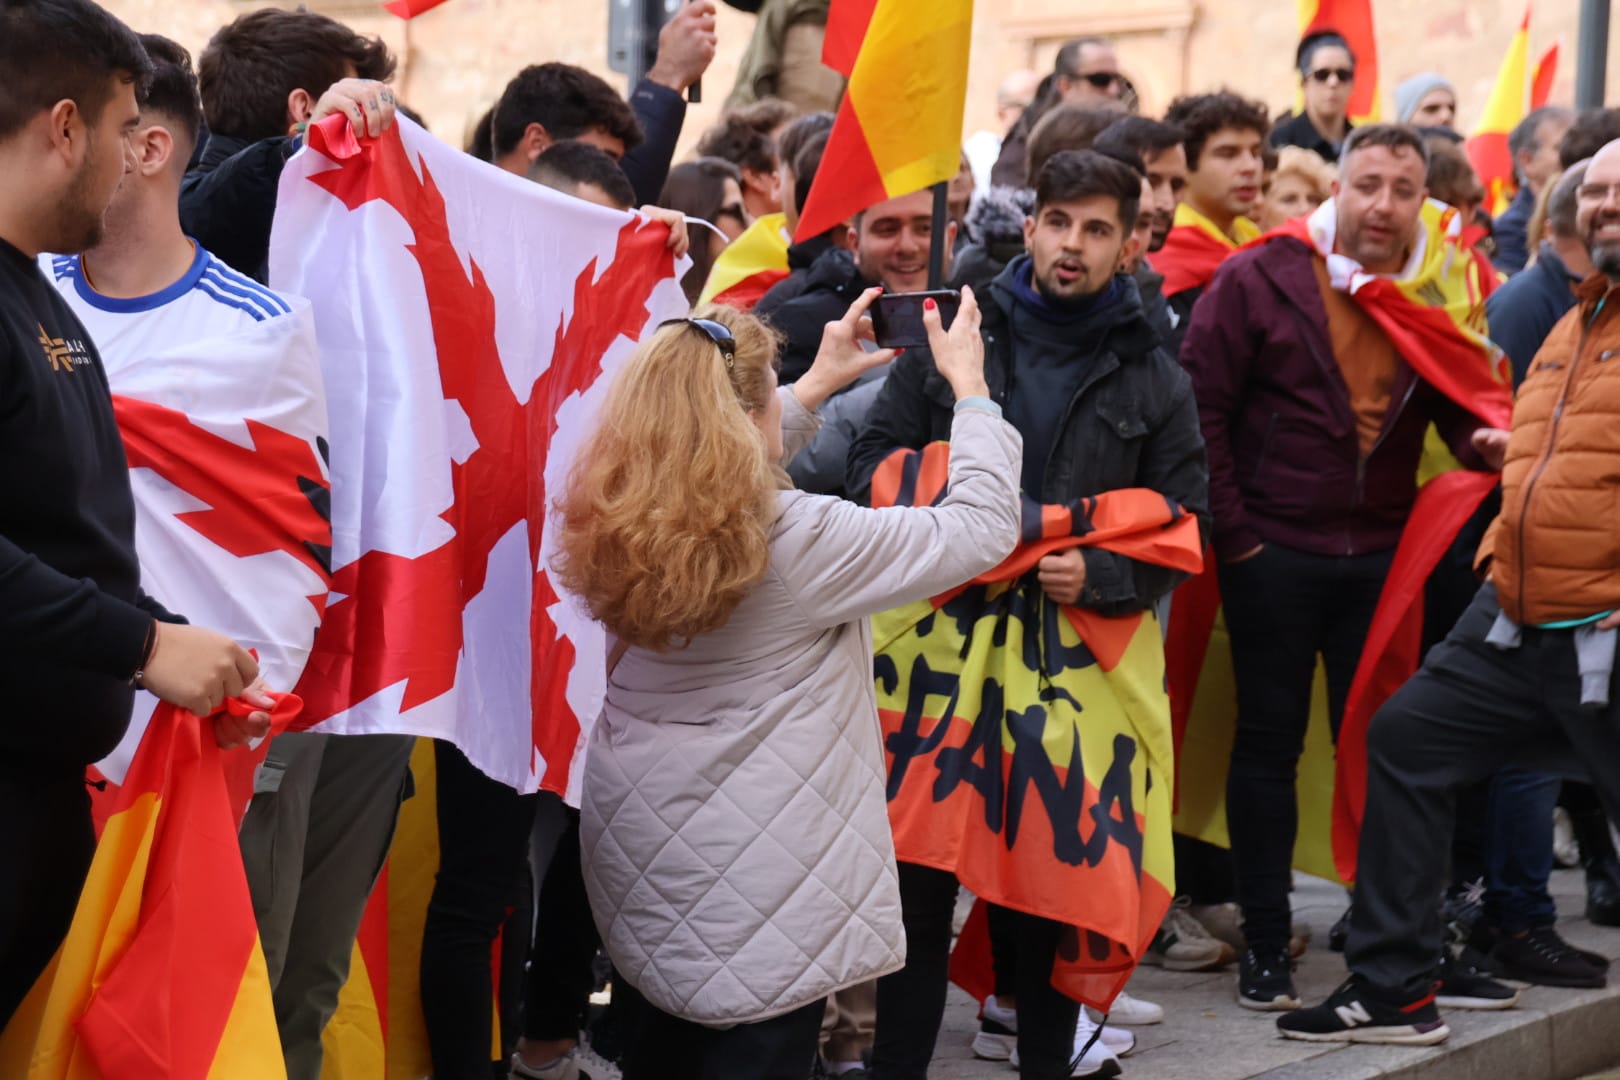 Miles de manifestantes se trasladan hasta la sede del PSOE para continuar las protestas contra los socialistas y la amnistía tras la manifestación del PP. Fotos Andrea M (8)